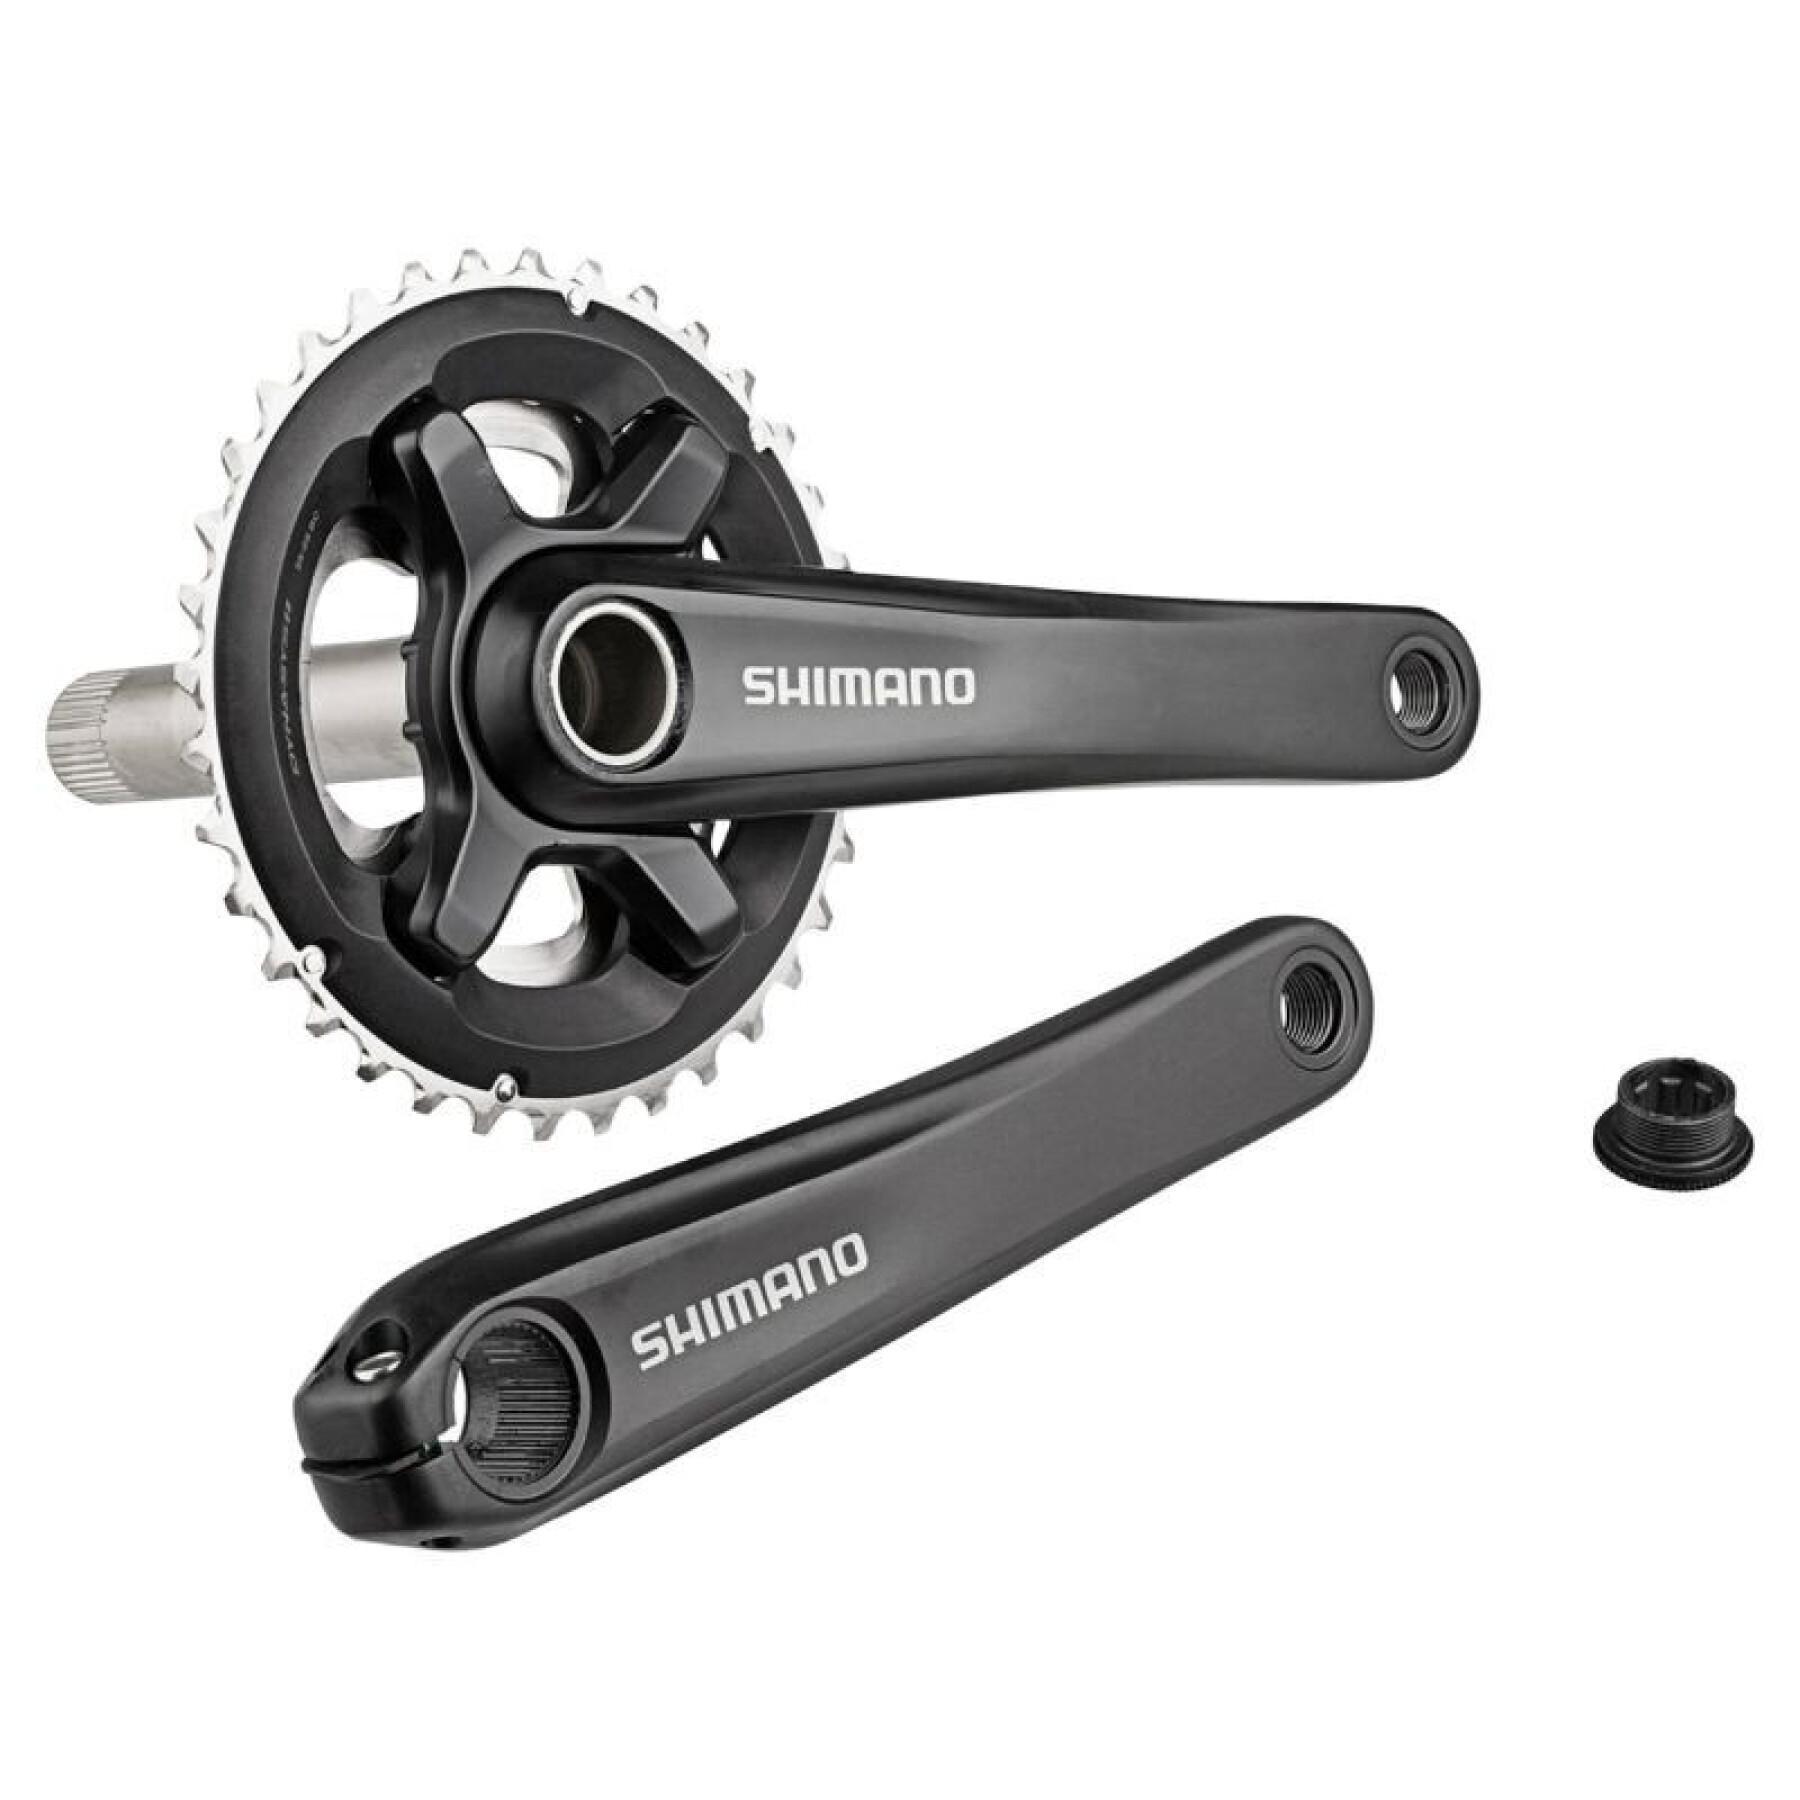 Zintegrowany mechanizm korbowy do rowerów górskich Shimano Xt Mt700 11V. 175 mm 36-26